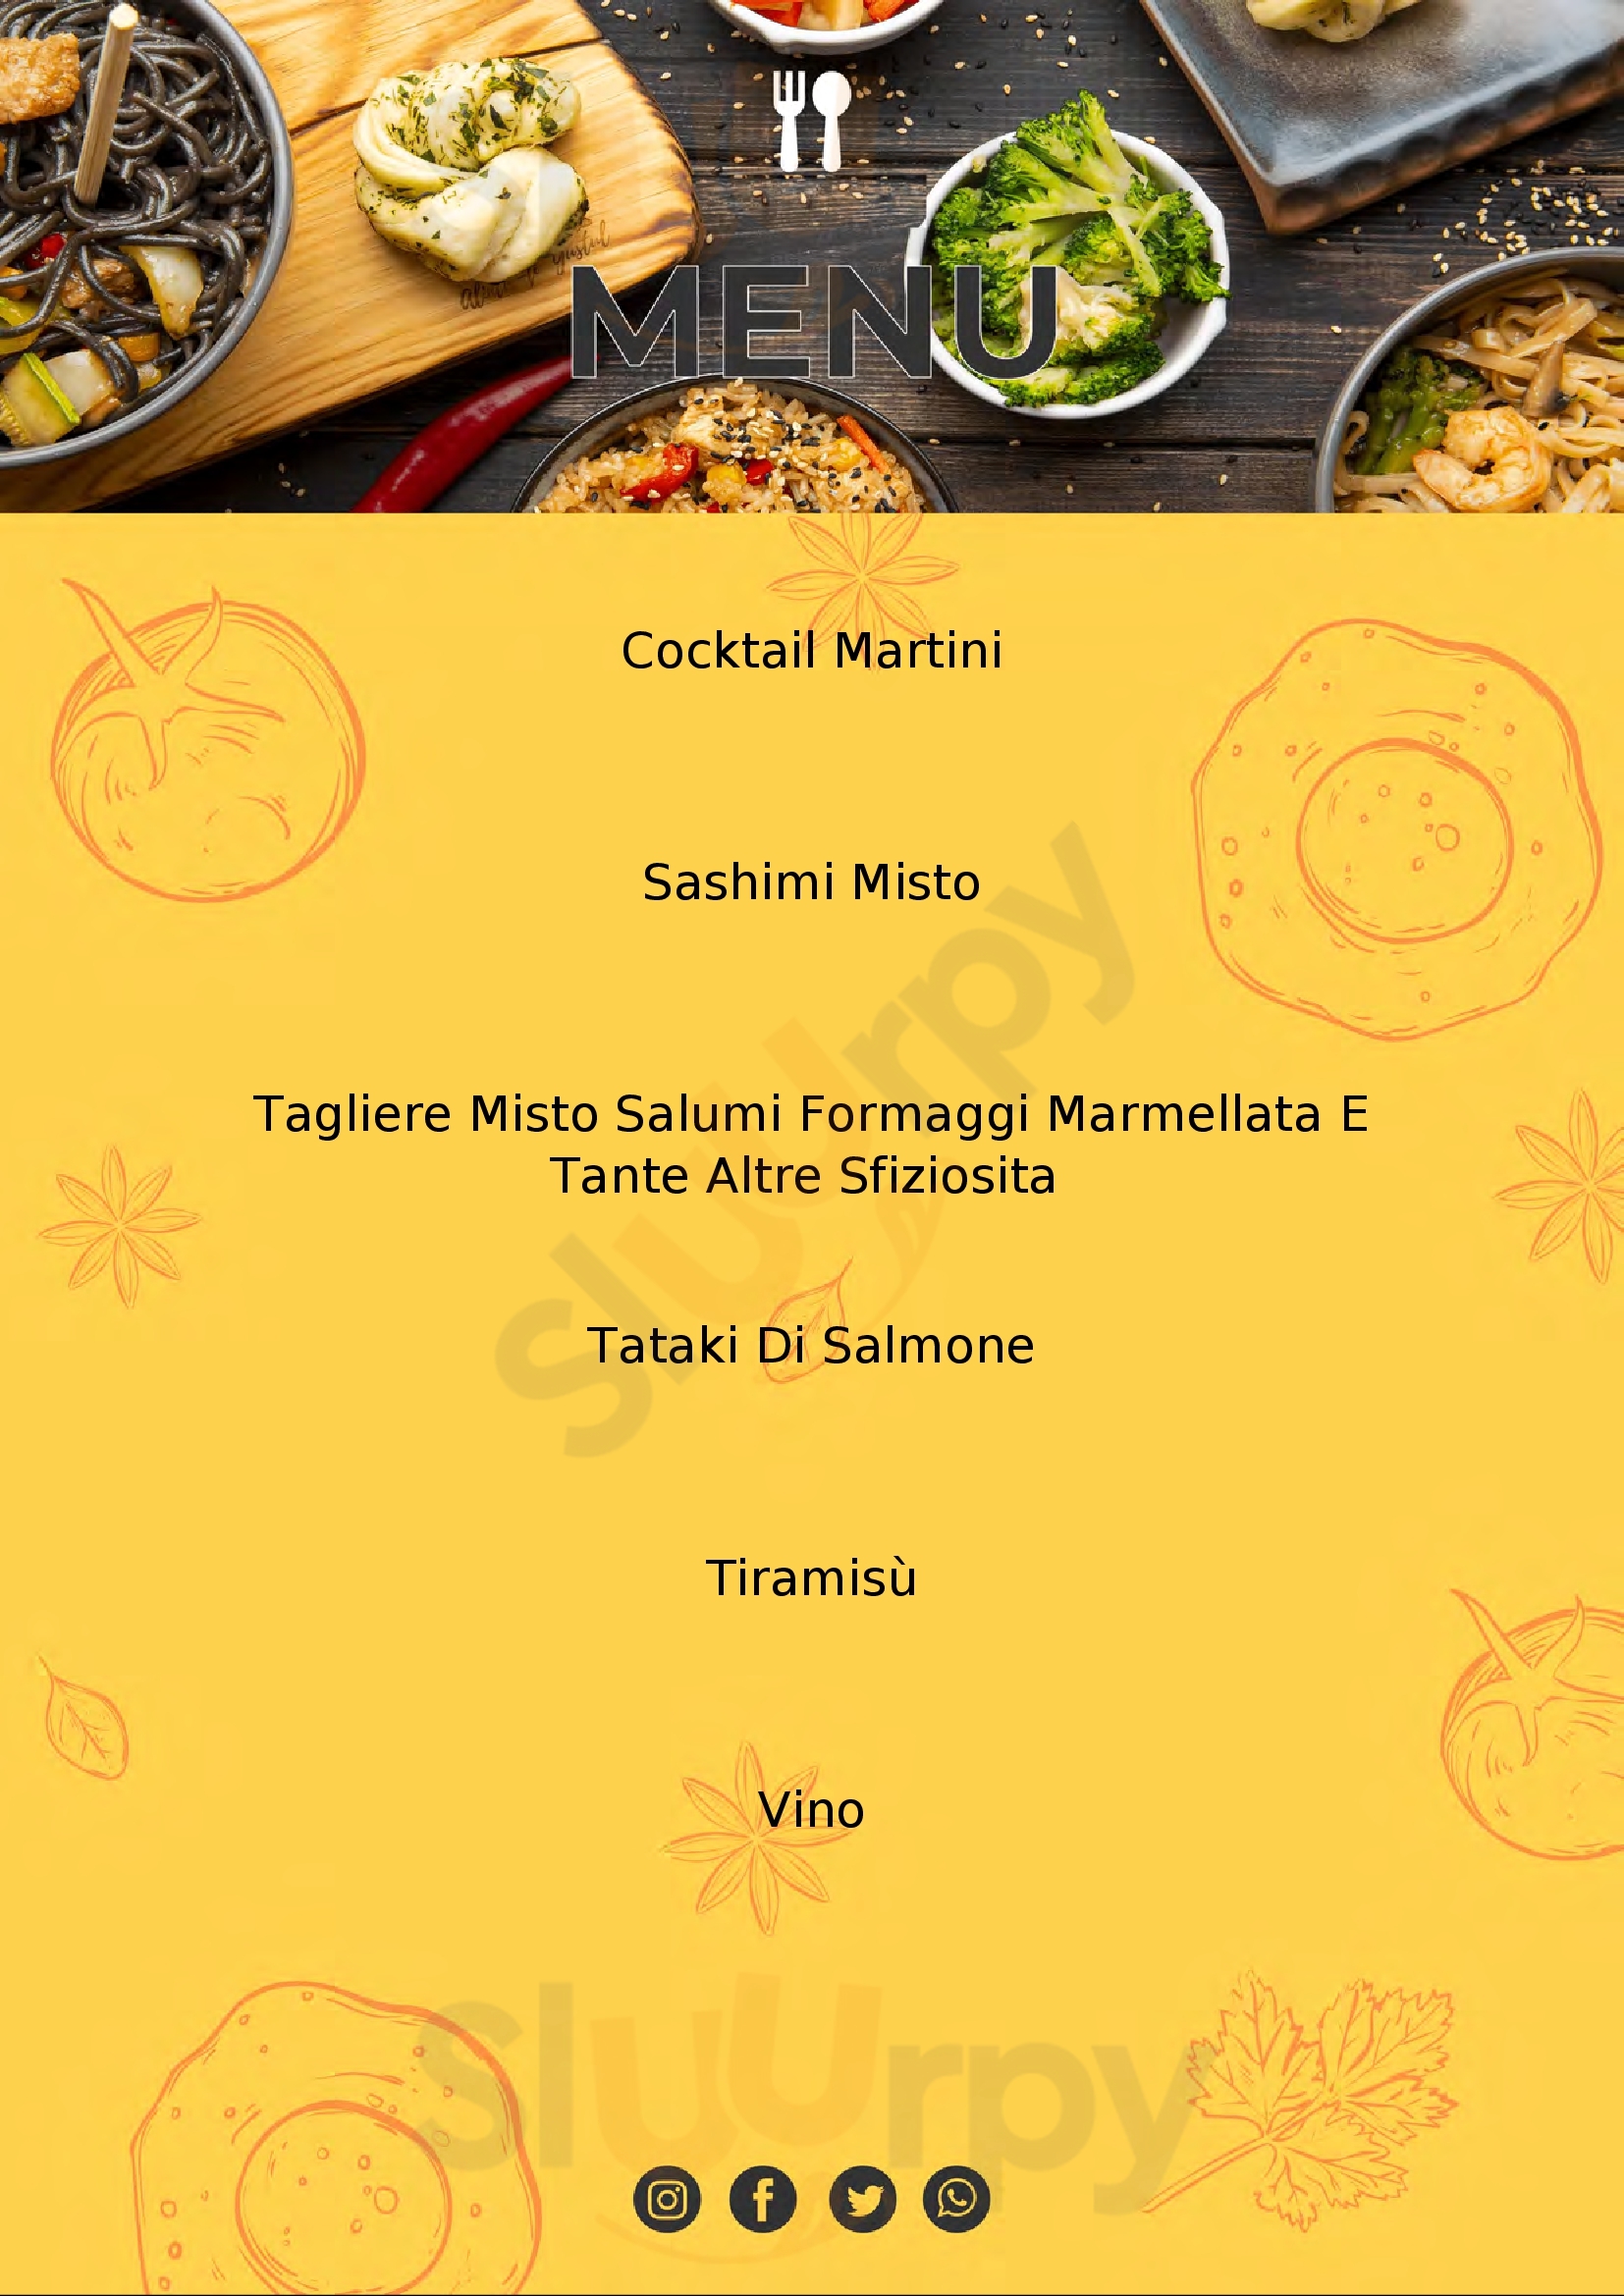 Lungo Canale Sushi Crudite' Viareggio menù 1 pagina